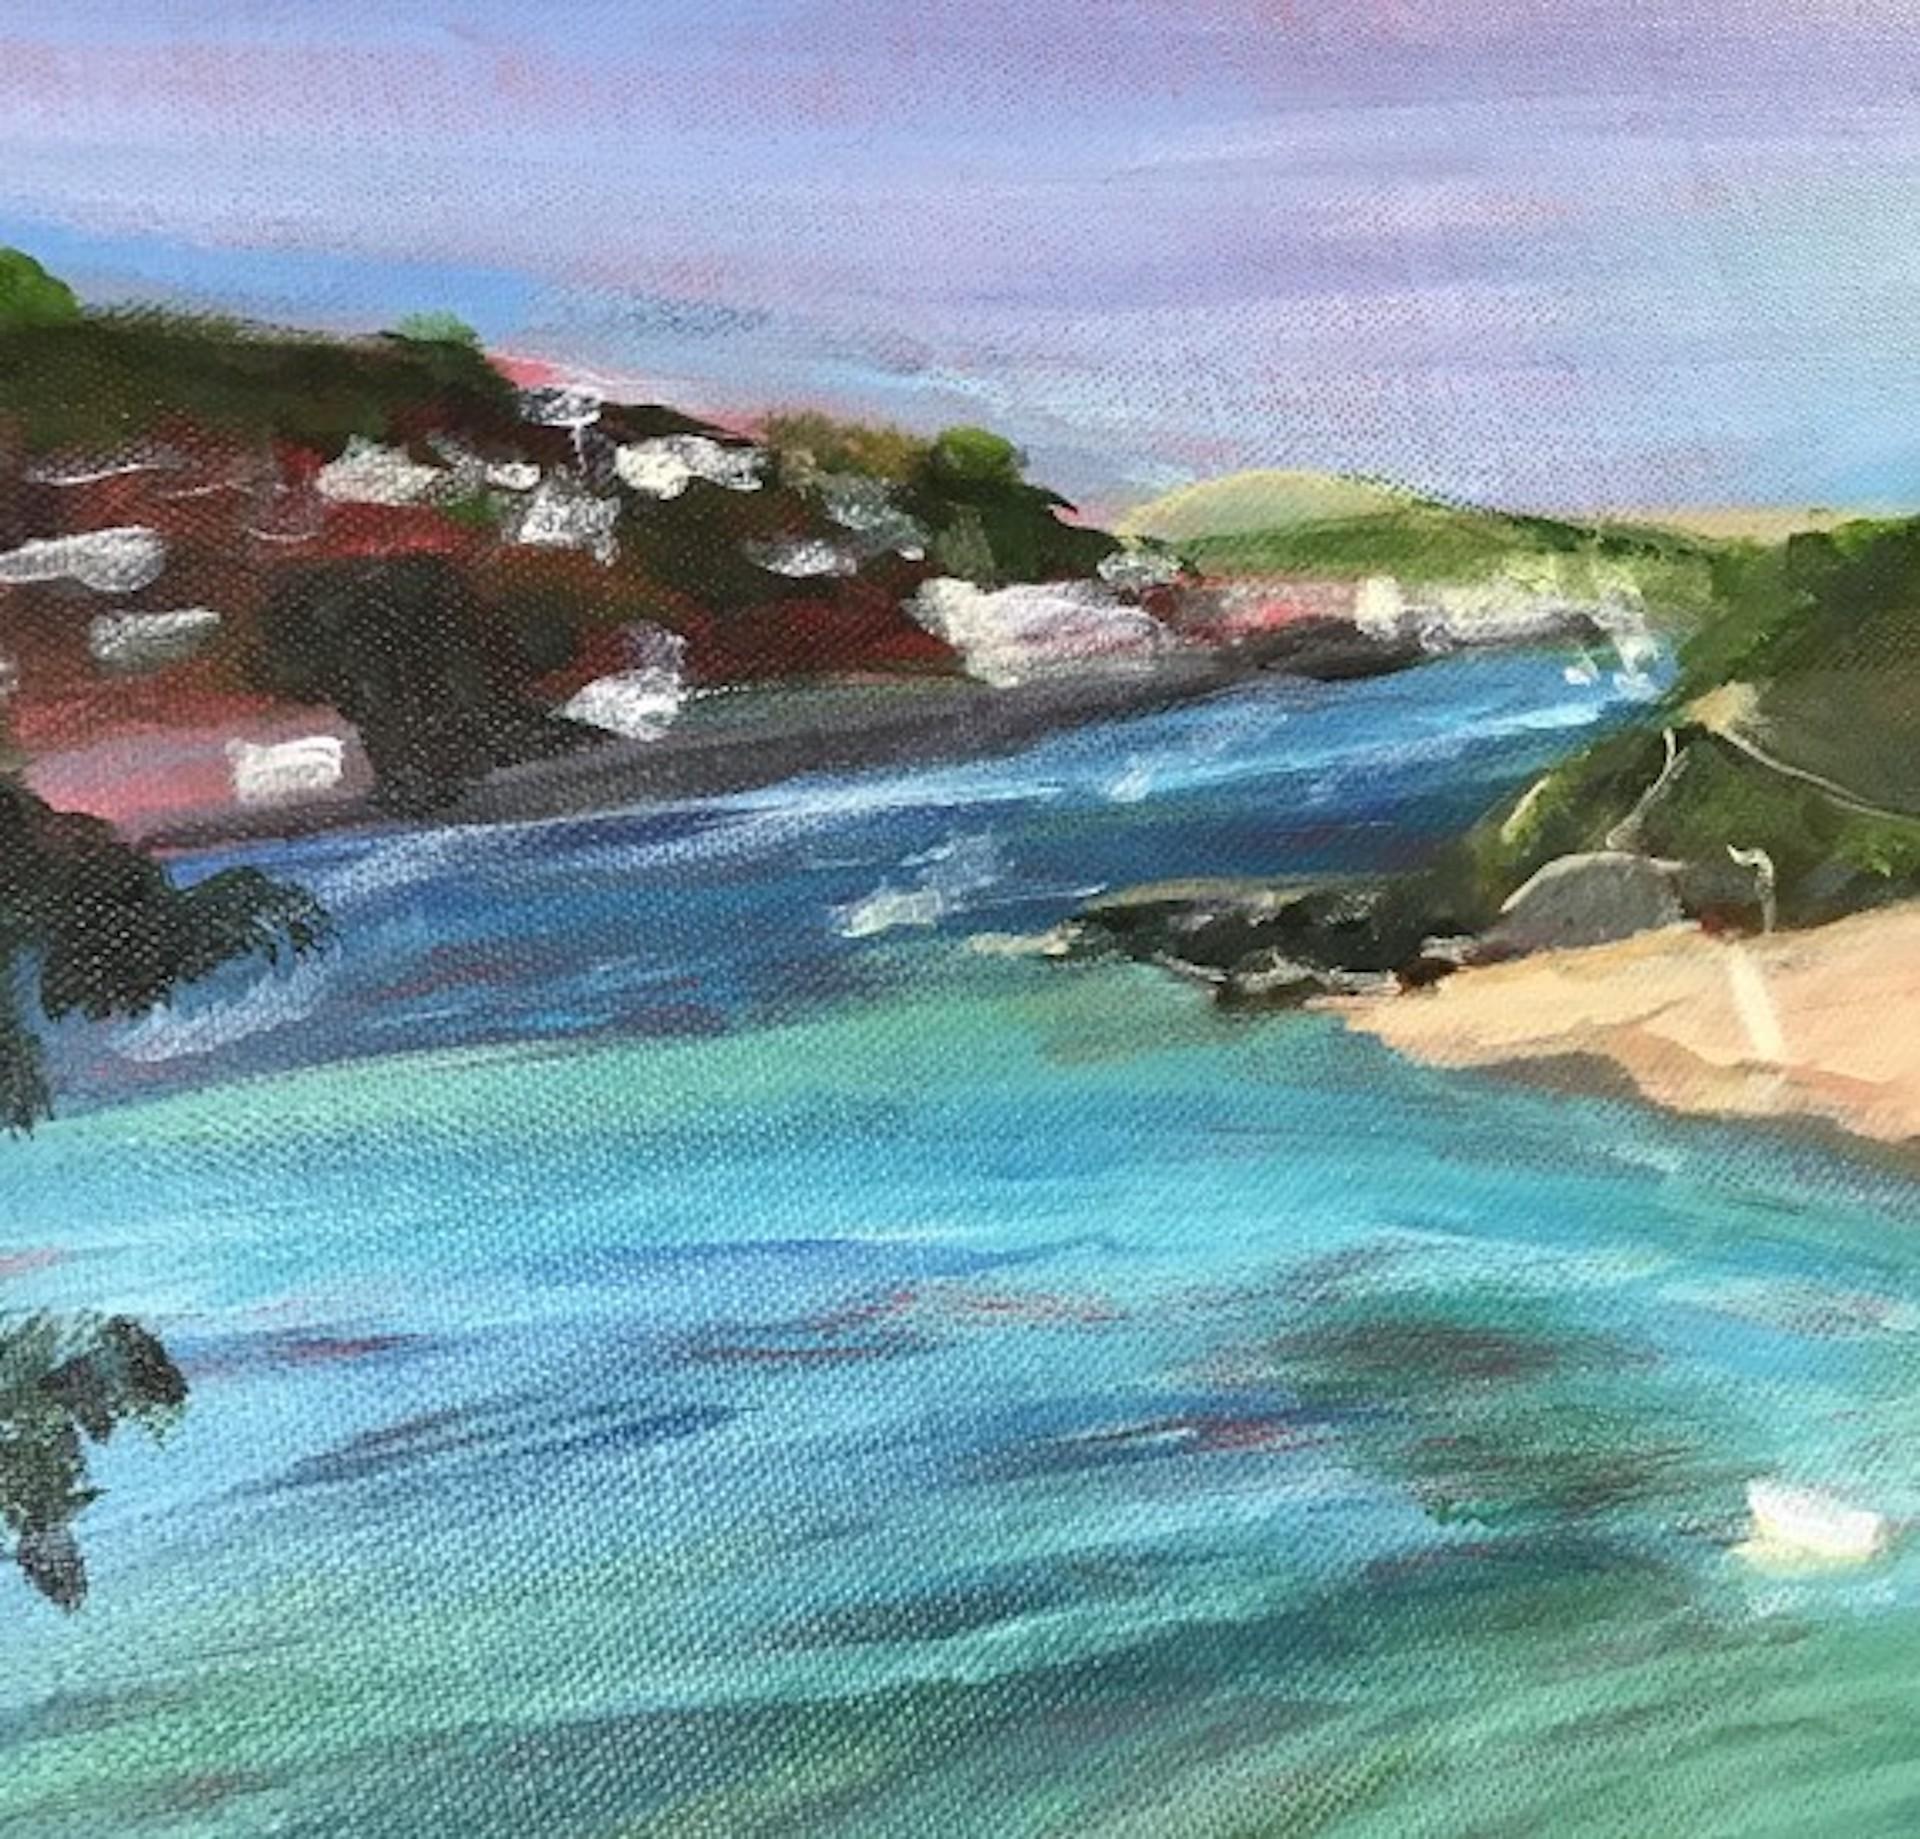 Peri Taylor Cette vue de Sunny Cove, en direction de Salcombe, est l'une de mes préférées. En ce jour d'été de l'année dernière, la mer était d'un bleu exotique très séduisant.
Peri Taylor est disponible à Wychwood Art en ligne et dans notre